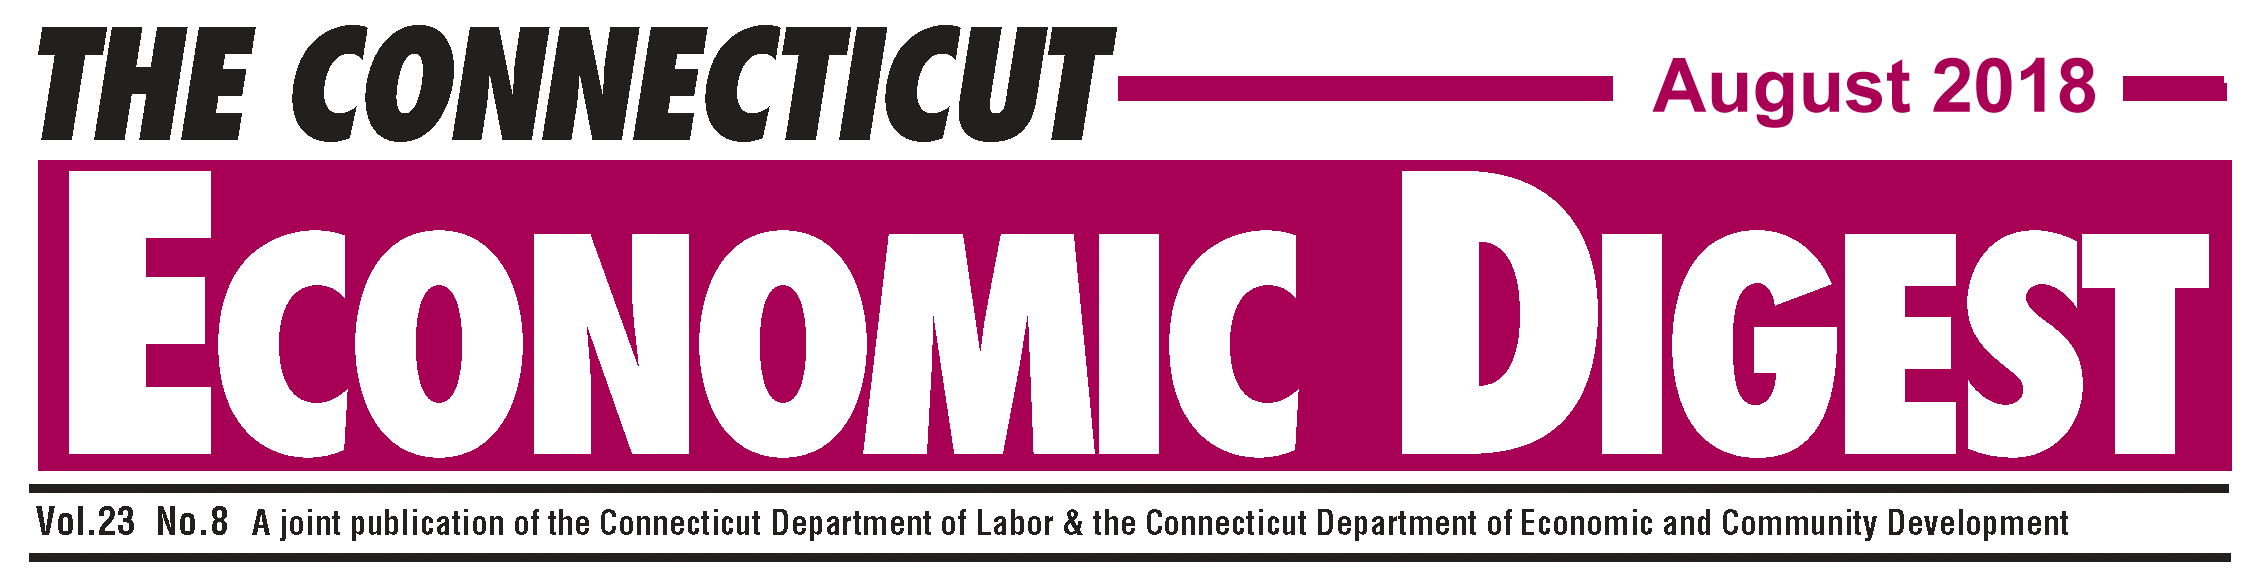 August 2018 Connecticut Economic Digest